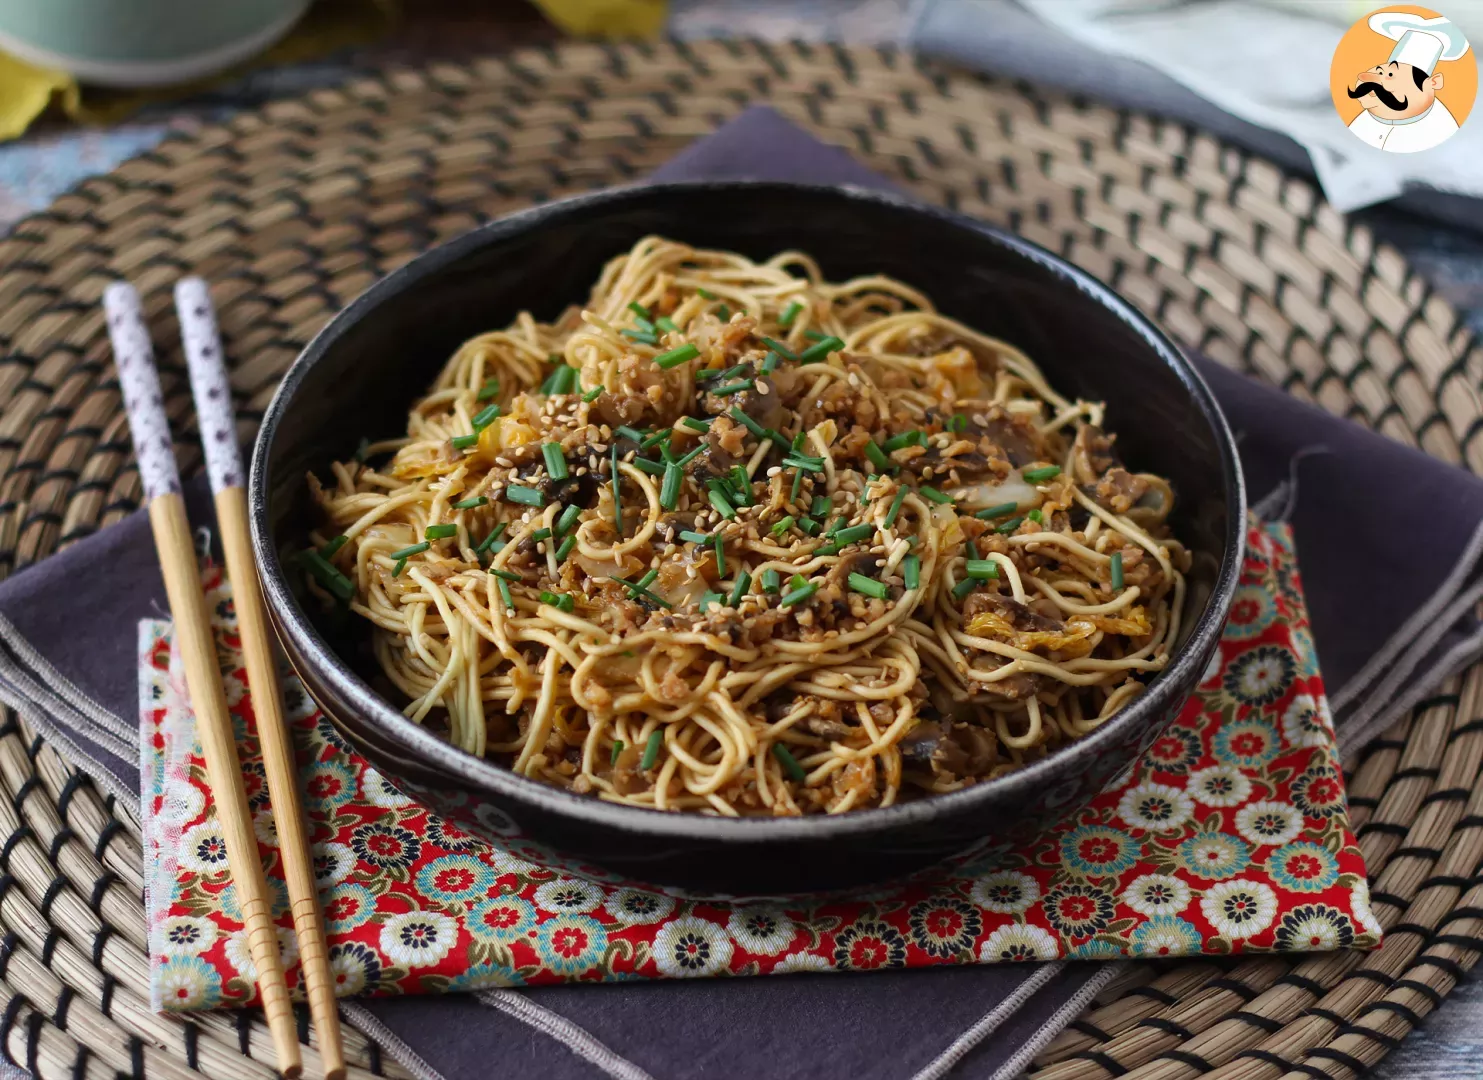 Wok de fideos chinos, verduras y proteina de soja texturizada ¡una receta  vegana! - Receta Petitchef